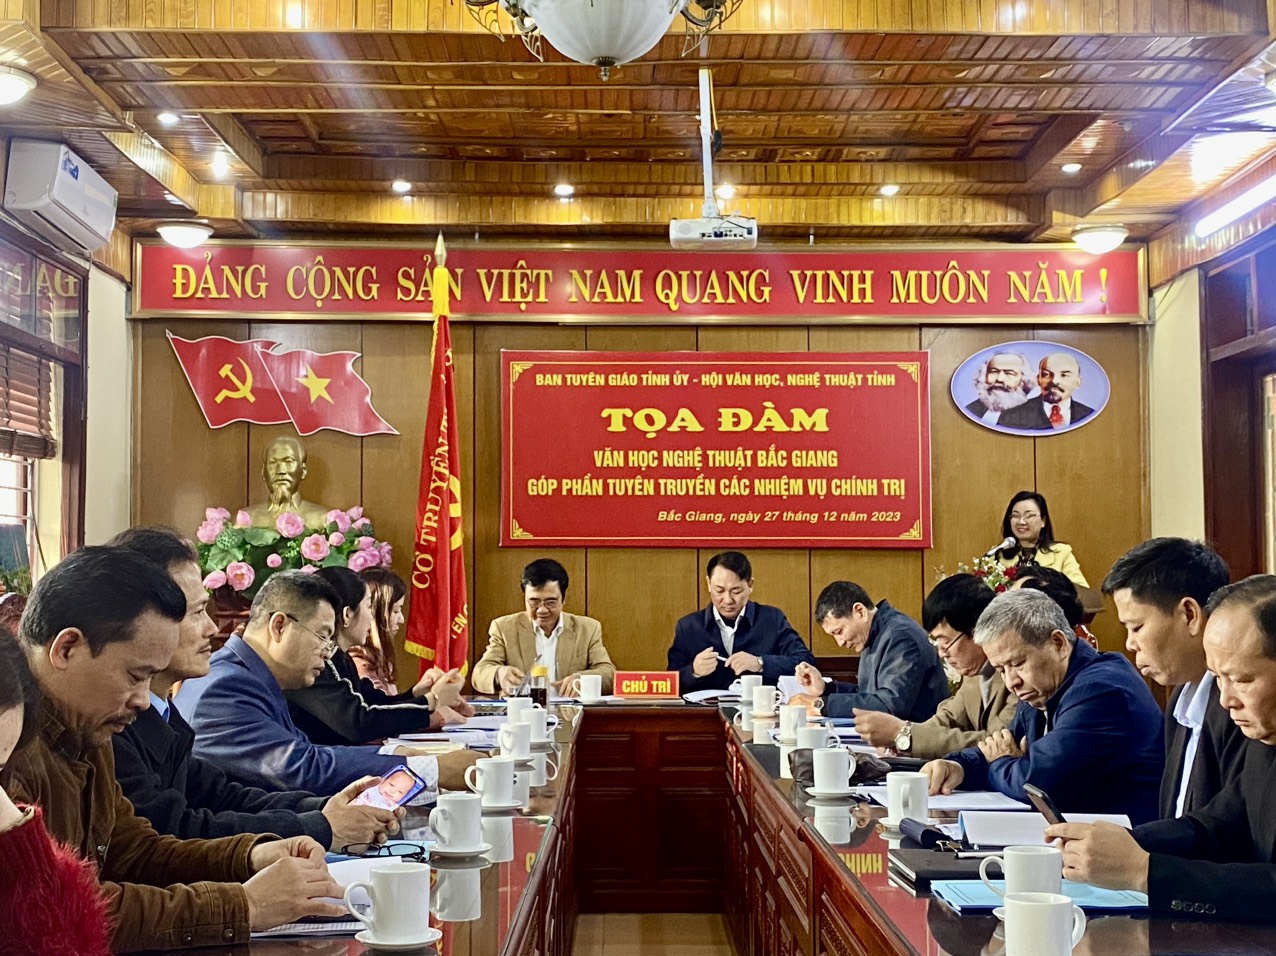 Tọa đàm văn học nghệ thuật Bắc Giang góp phần tuyên truyền các nhiệm vụ chính trị